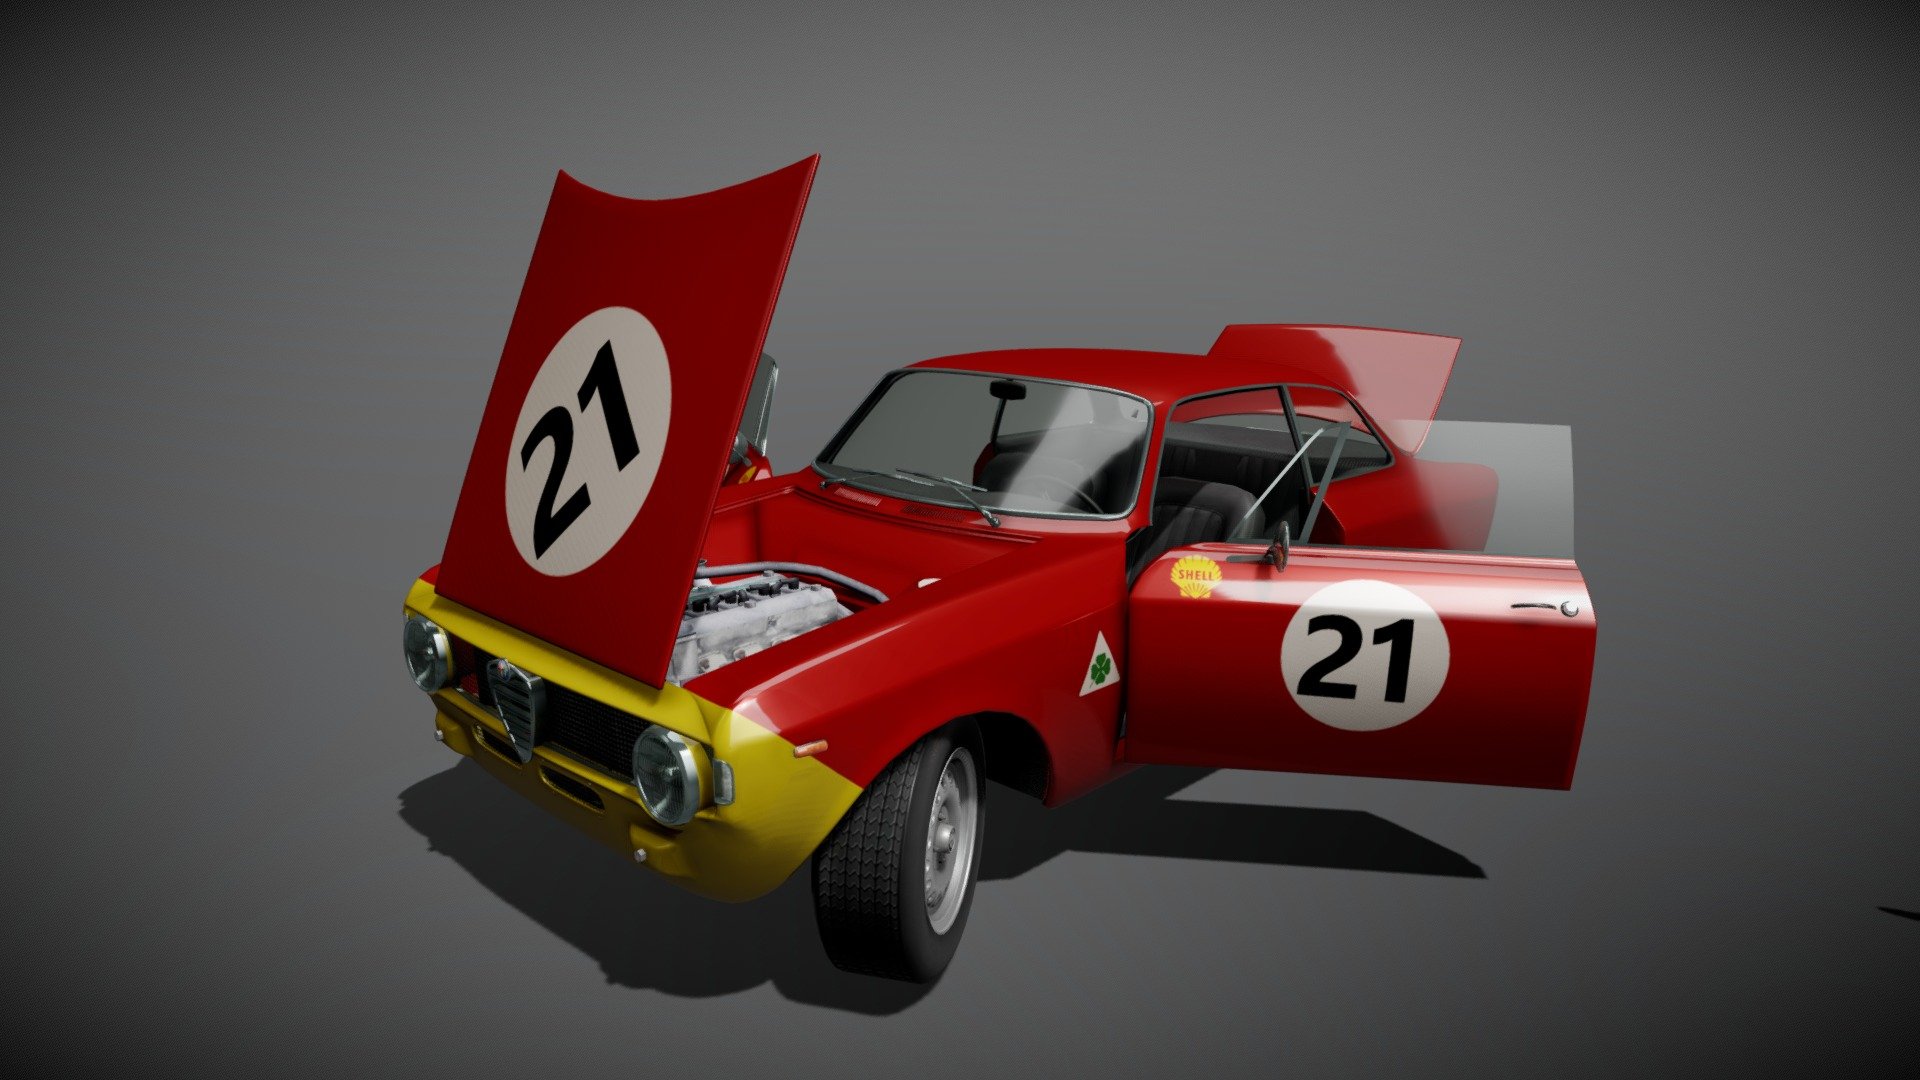 1965 Alfa Romeo Giulia Sprint - 1965 Alfa Romeo Giulia Sprint - Download Free 3D model by dagtholander 3d model